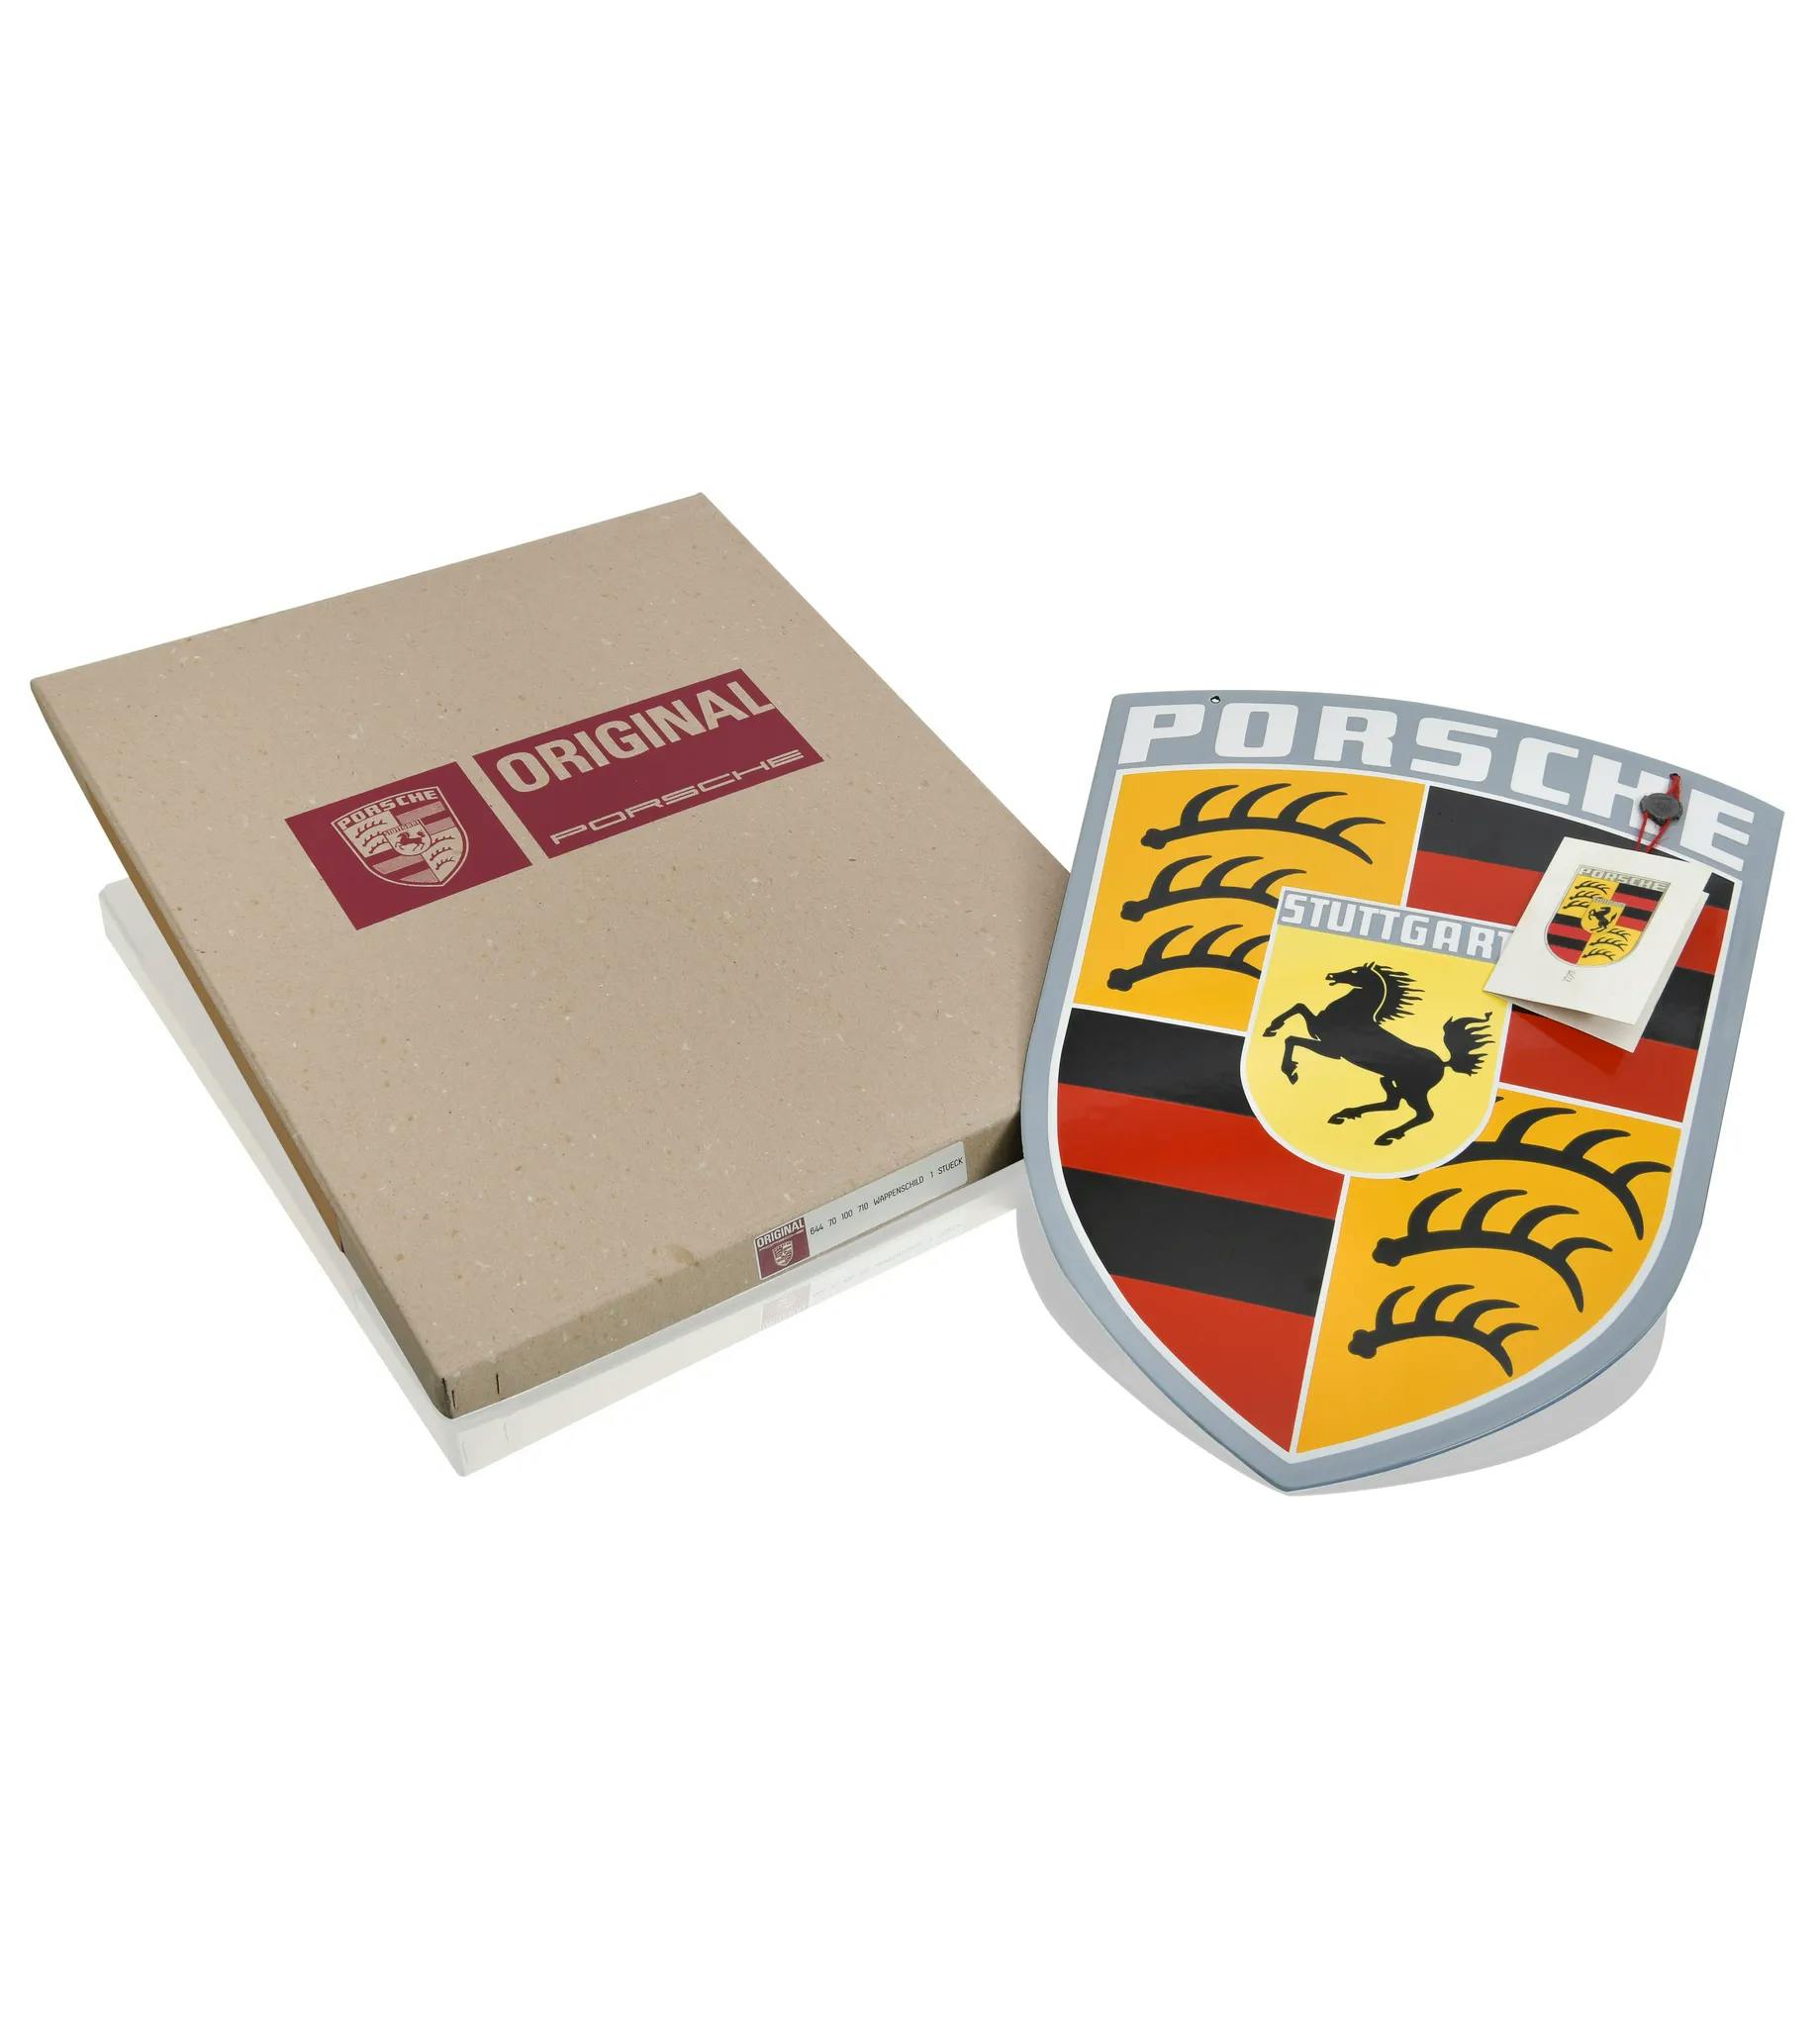 Emaljskylt – Porsche-emblem 1